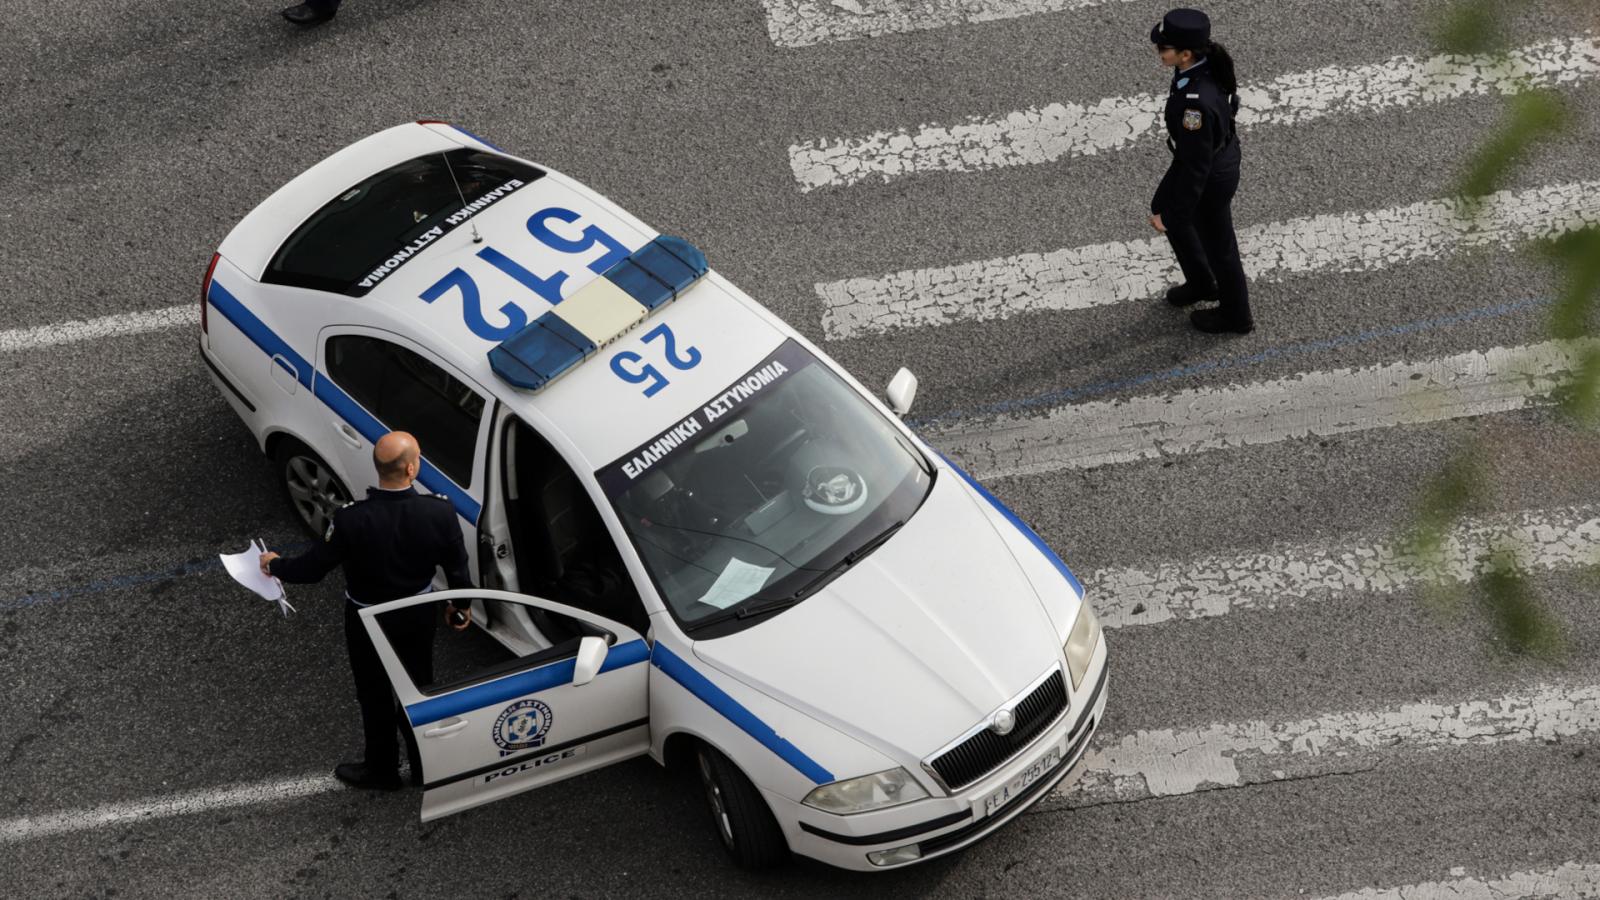 Η Αστυνομία για την επίθεση σε οδηγό στην Ε.Ο. Ξάνθης – Σταυρούπολης